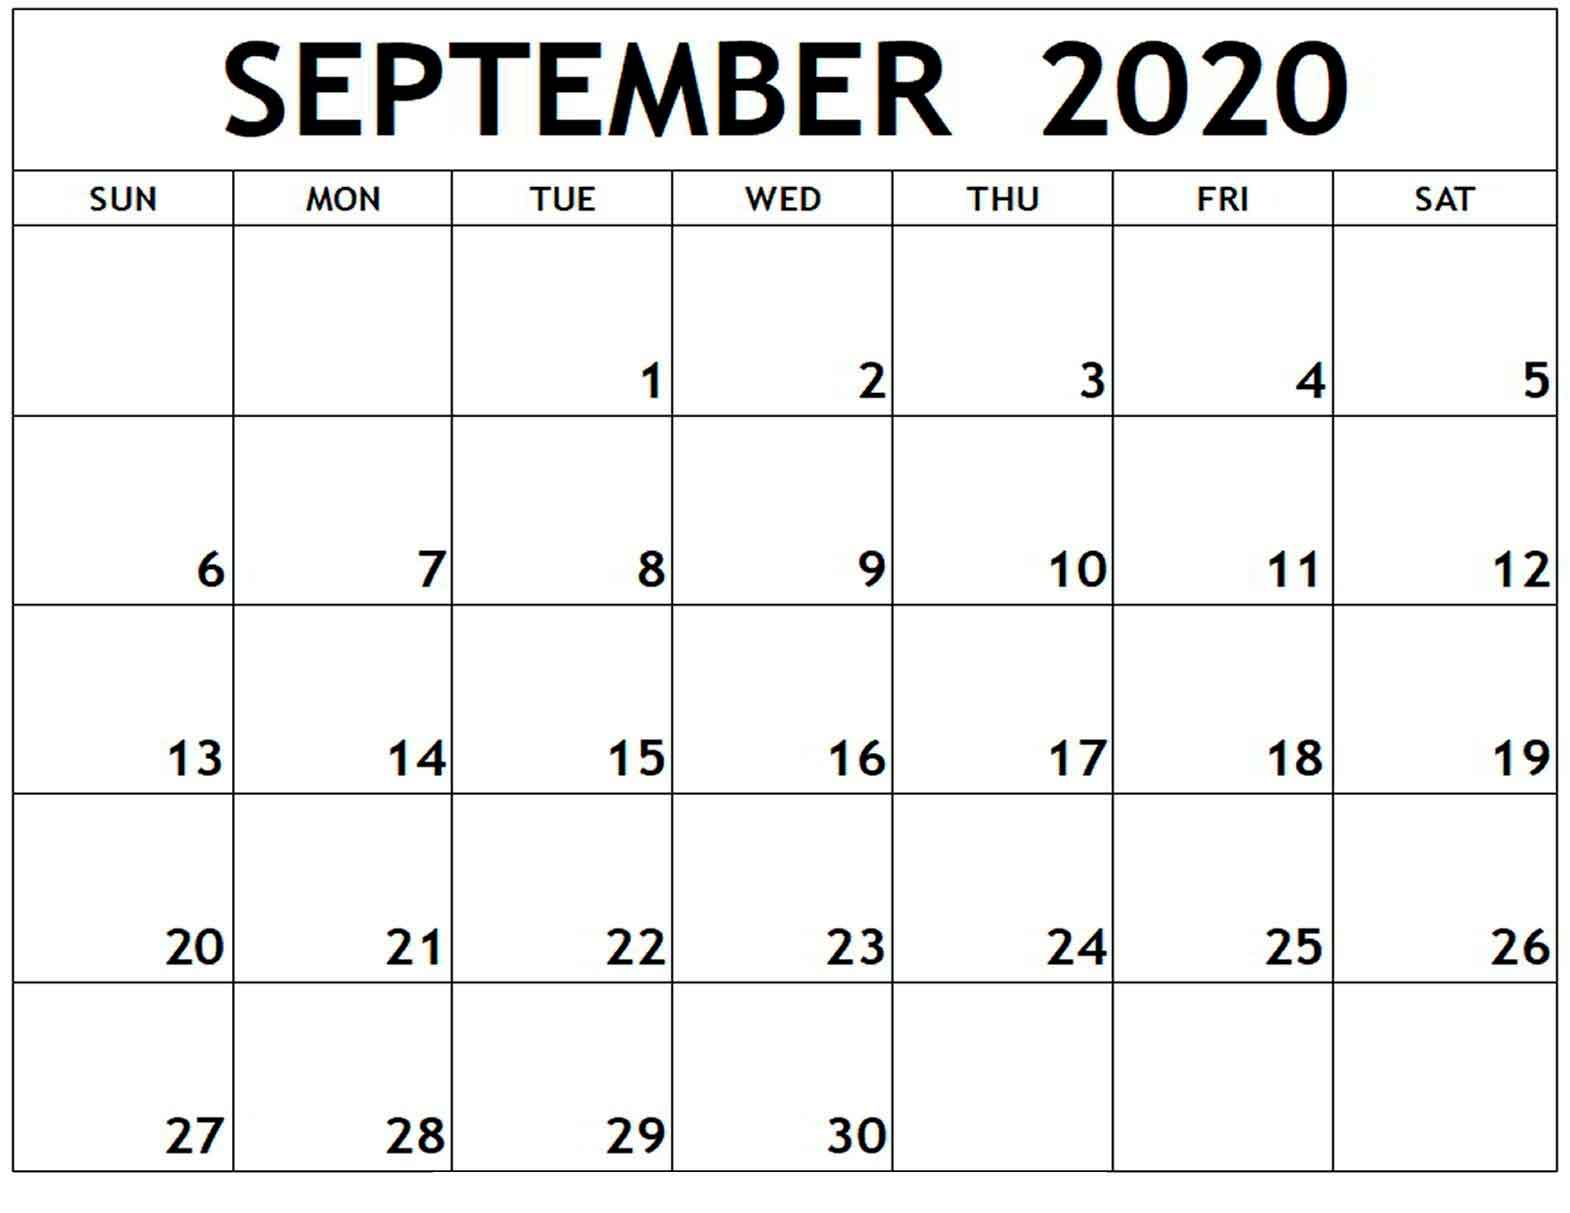 September 2020 Monthly Calendar - Calendar Word